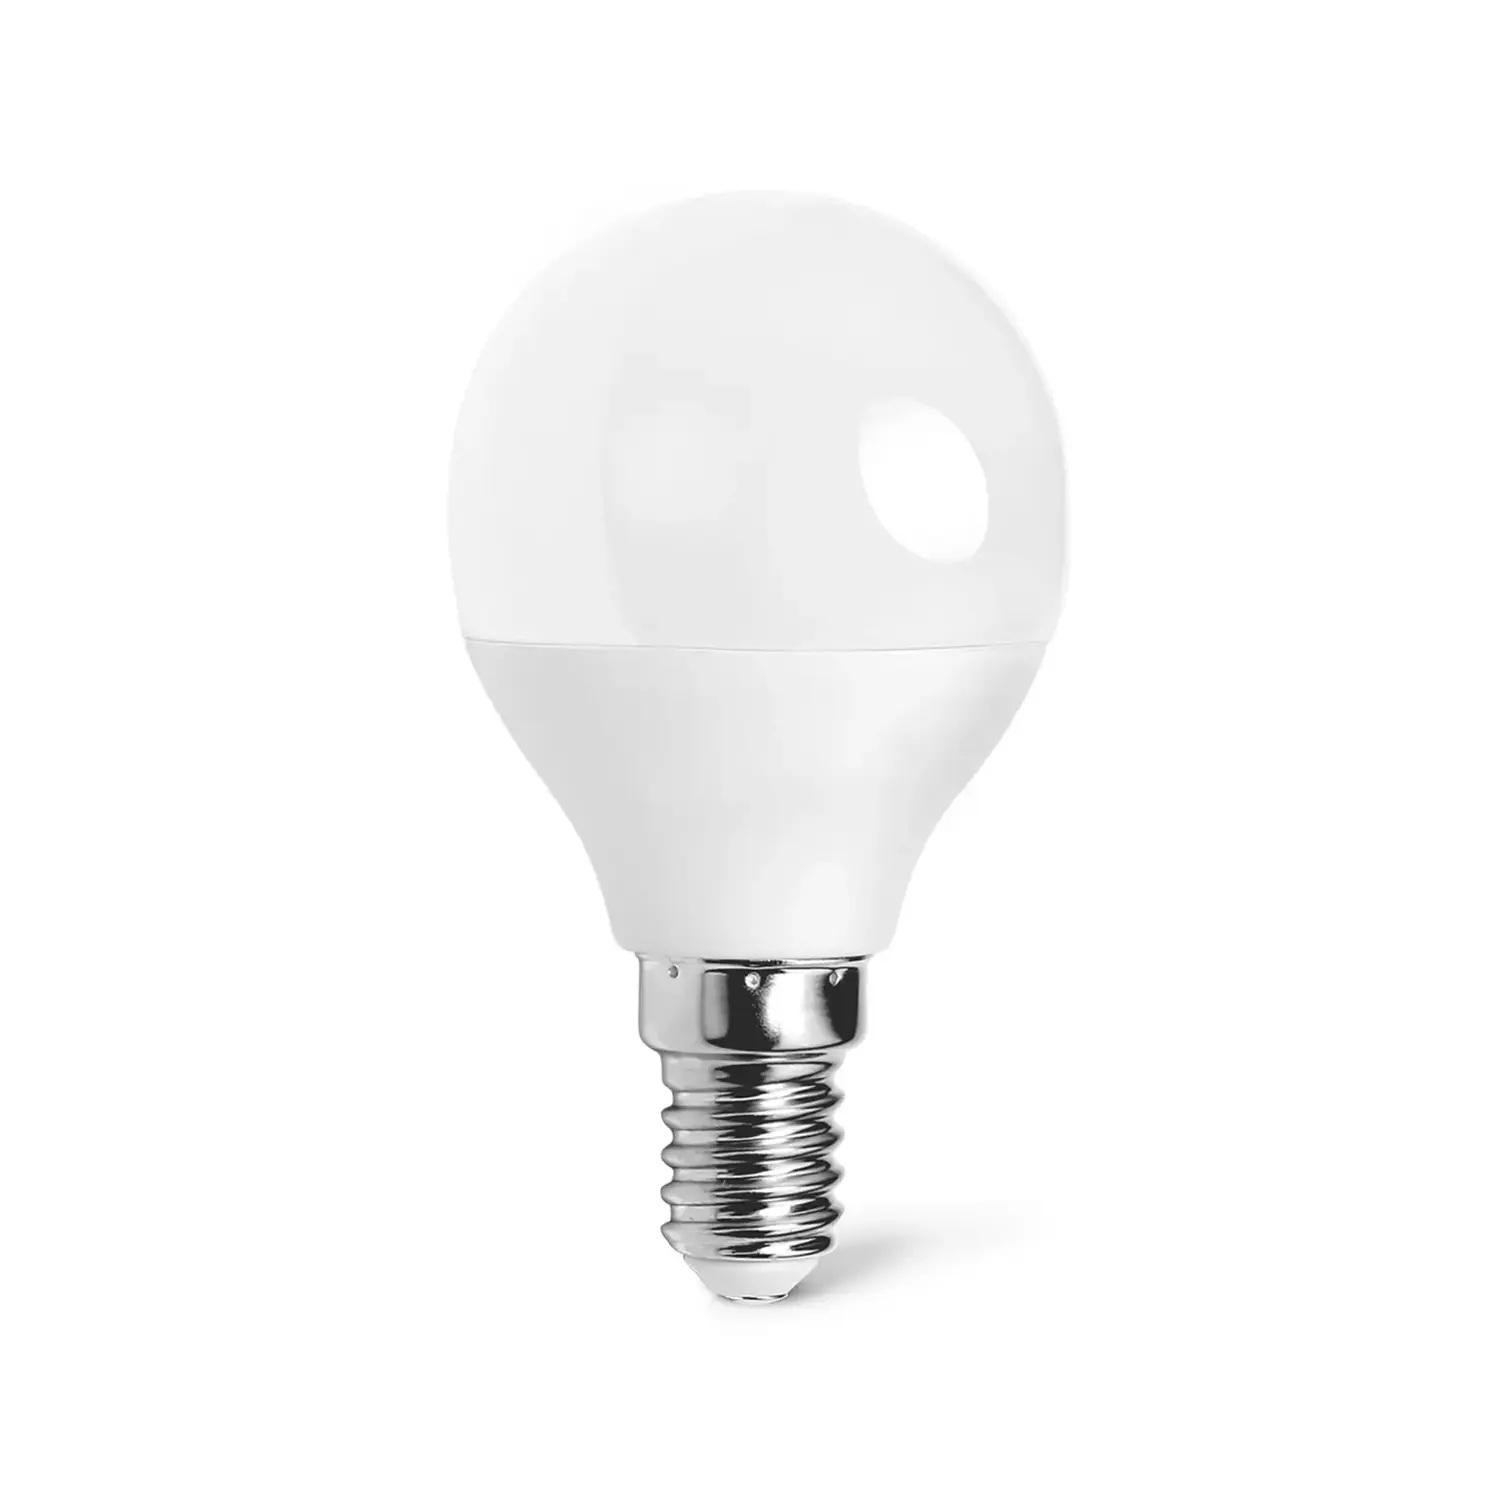 immagine del prodotto lampadina led globetto lampadario abatjour e14 6 watt bianco freddo